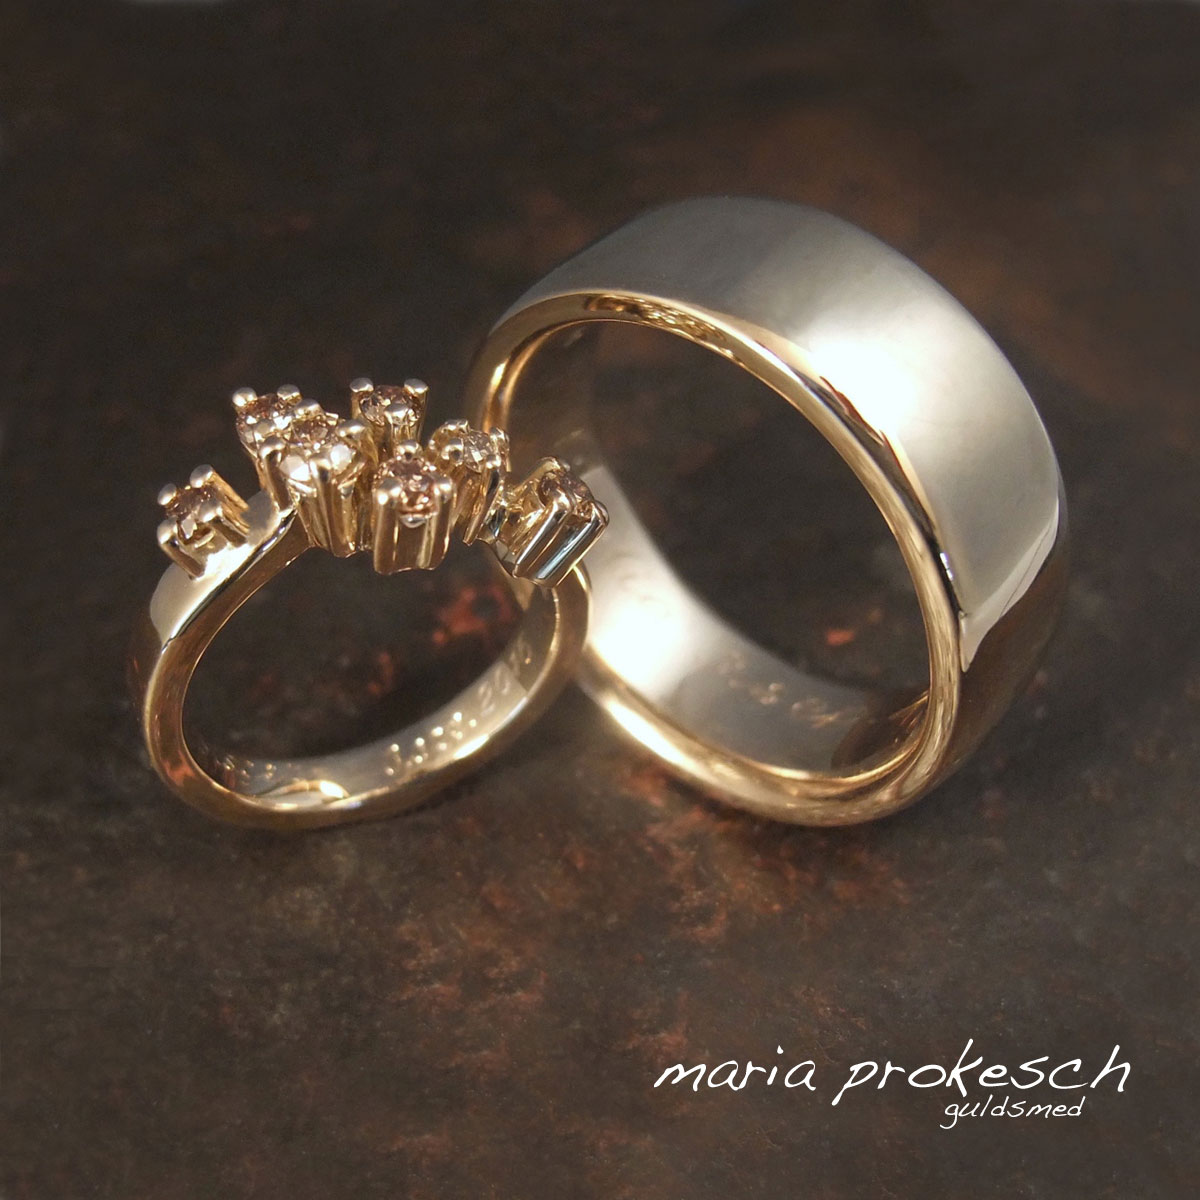 Eksklusive og elegante vielsesringe i 14 kt guld. Hendes ring med naturbrune diamanter i små fatninger. Hans ring er en blank bred herrering.